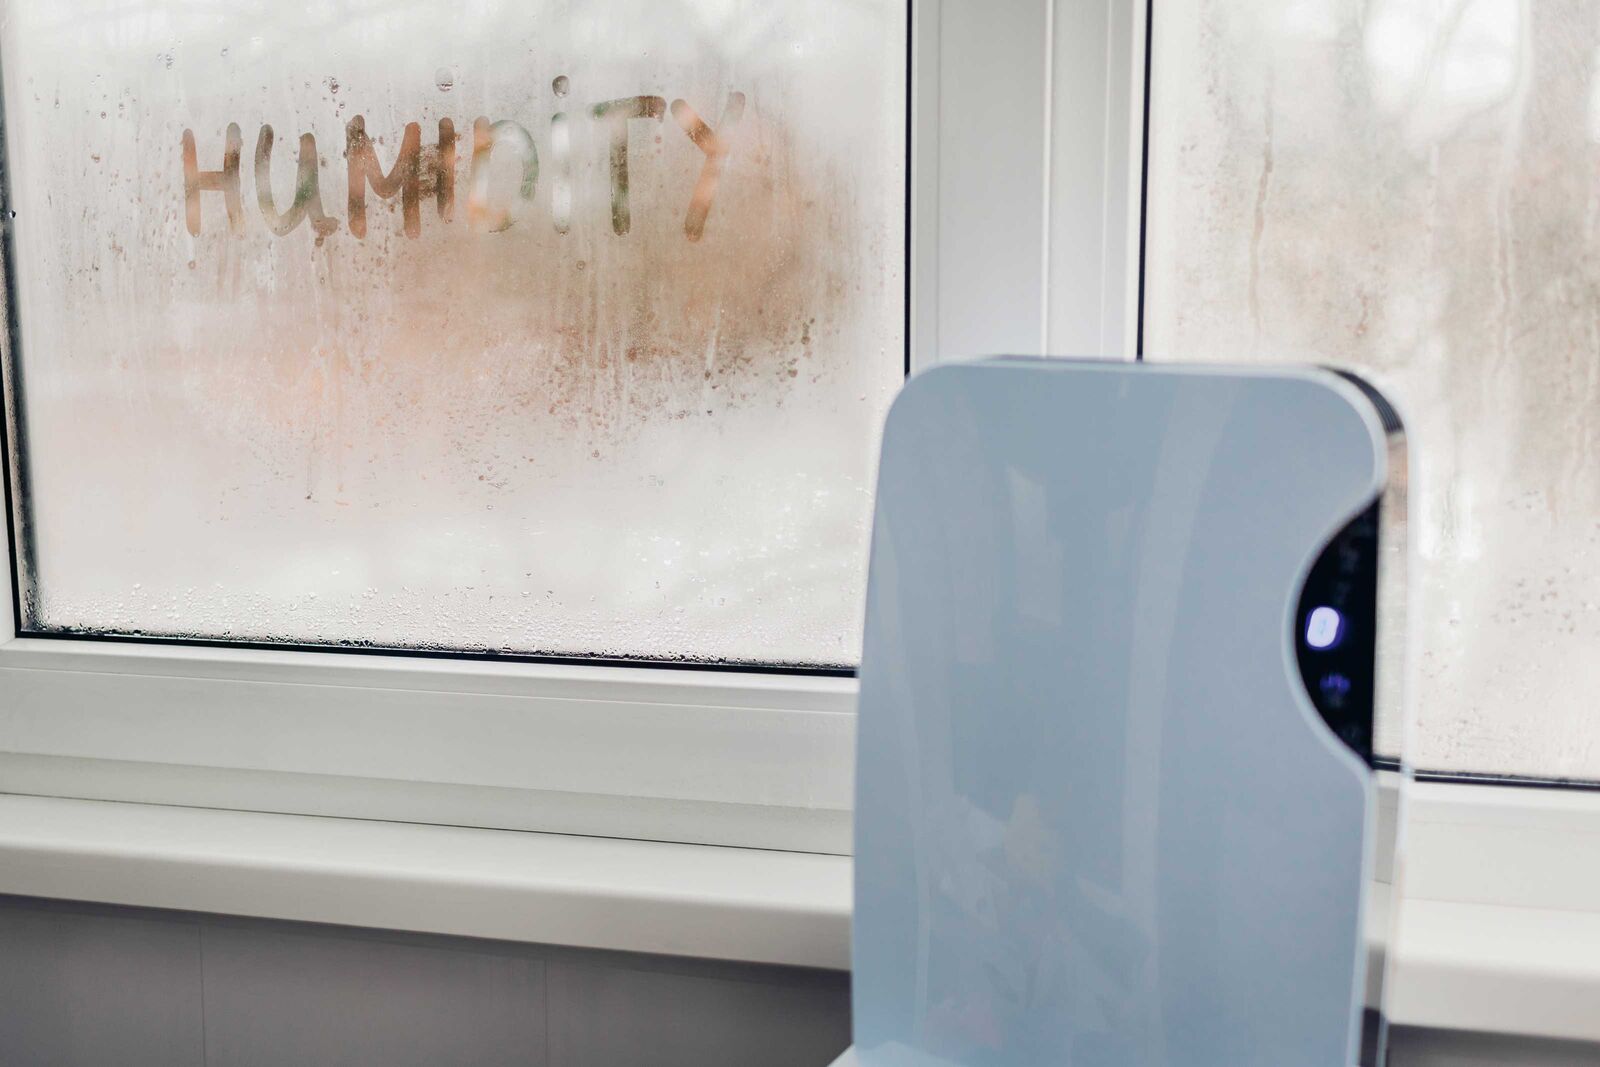 Entfeuchter schaffen Abhilfe, wenn sich Feuchtigkeit (engl. Humidity) auf Fenster und Wände niederschlägt.